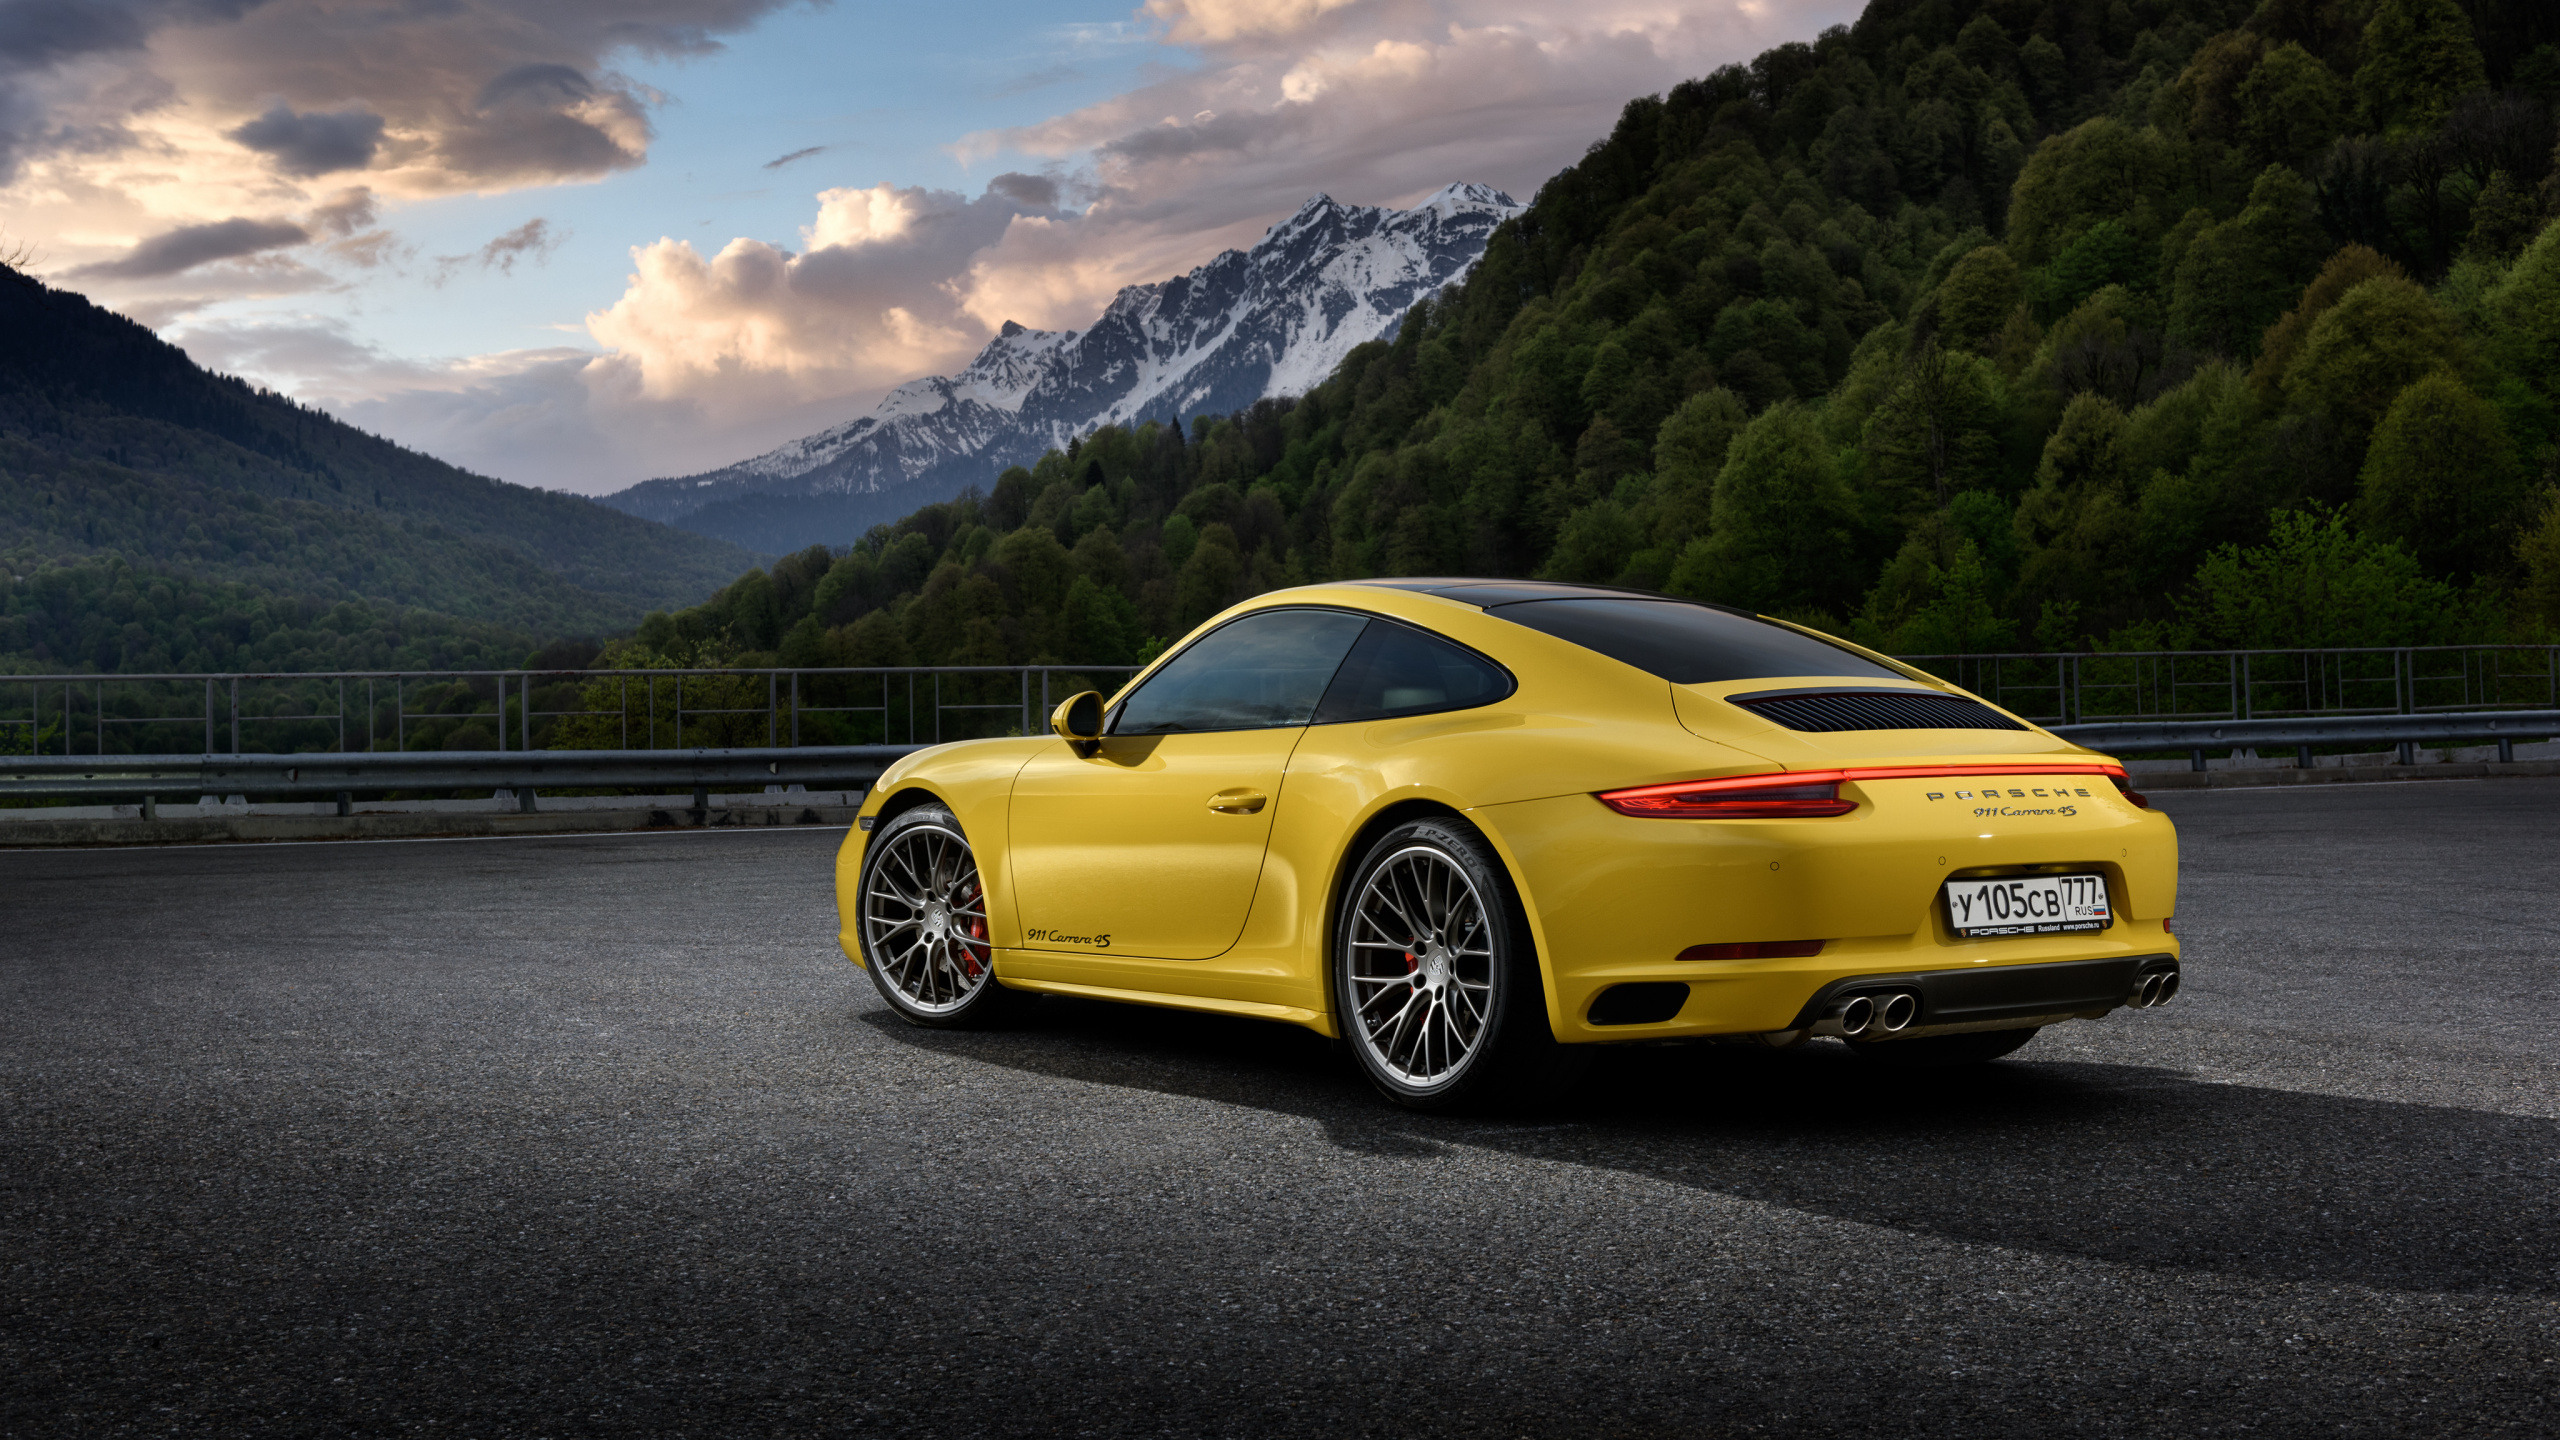 Porsche 911 Amarillo en la Carretera Cerca de la Montaña Durante el Día. Wallpaper in 2560x1440 Resolution